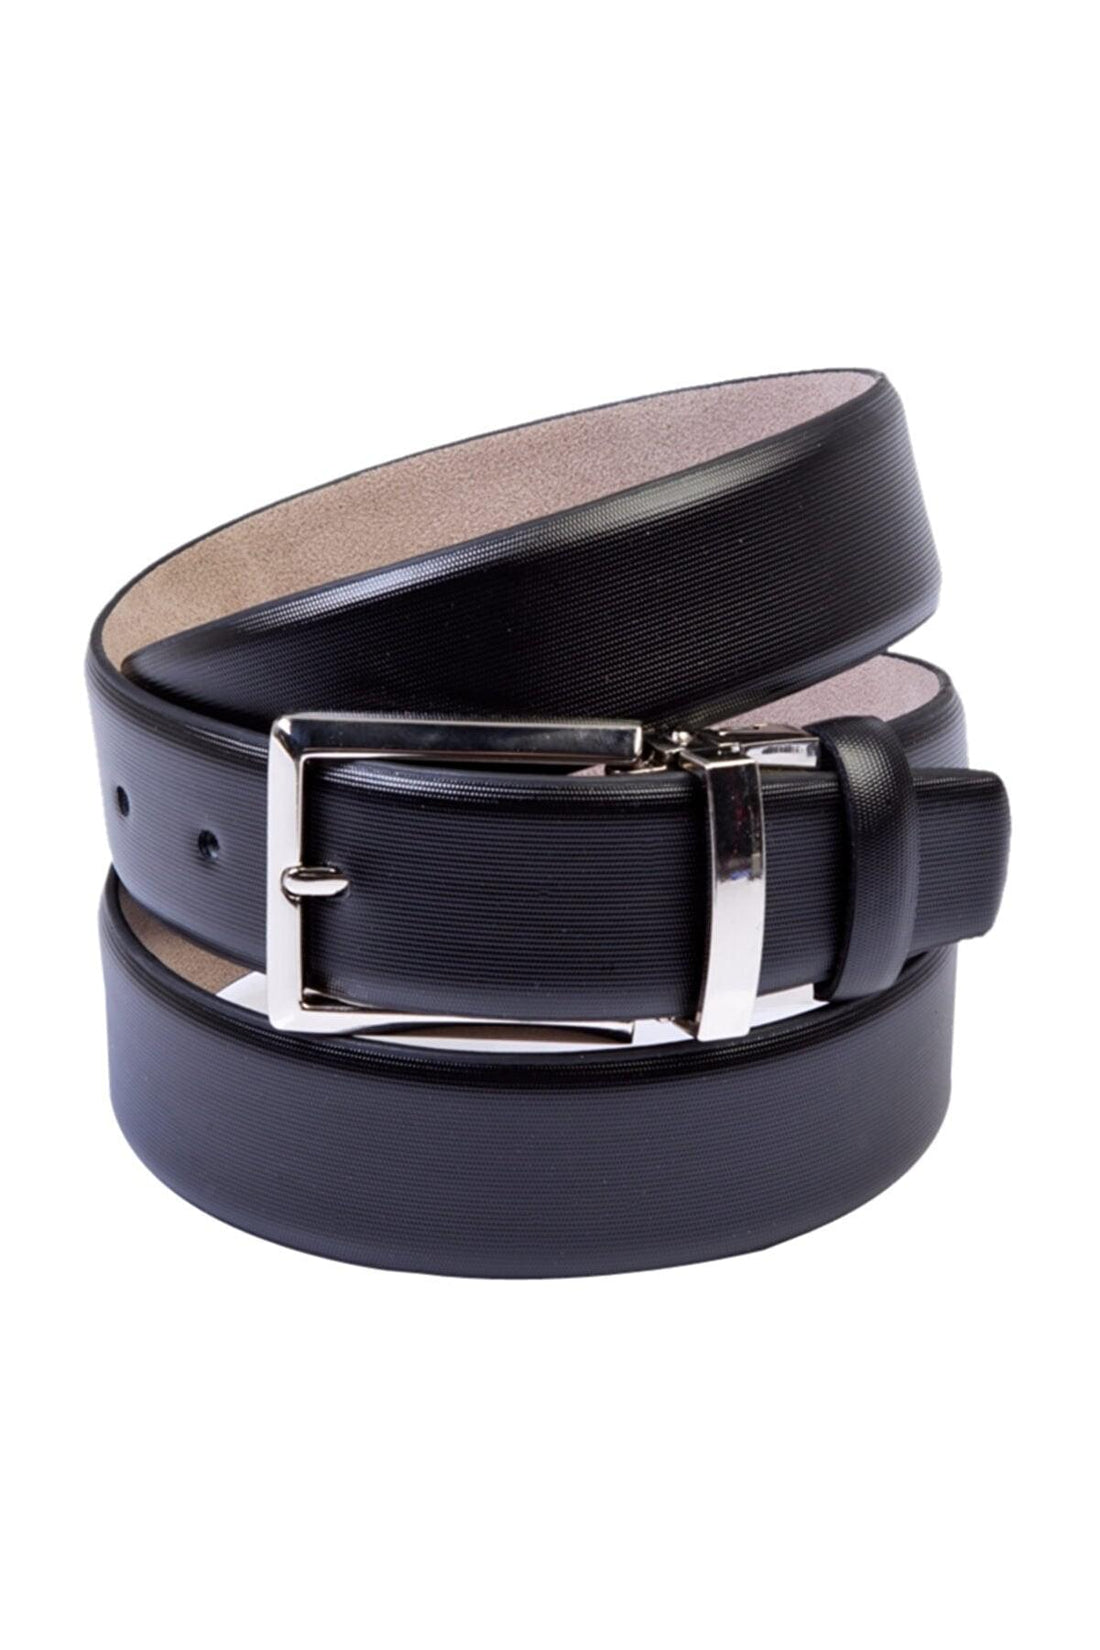 BELT AND WALLET &amp; CARD HOLDER BLACK SET-Belts-PEROZ Accessories